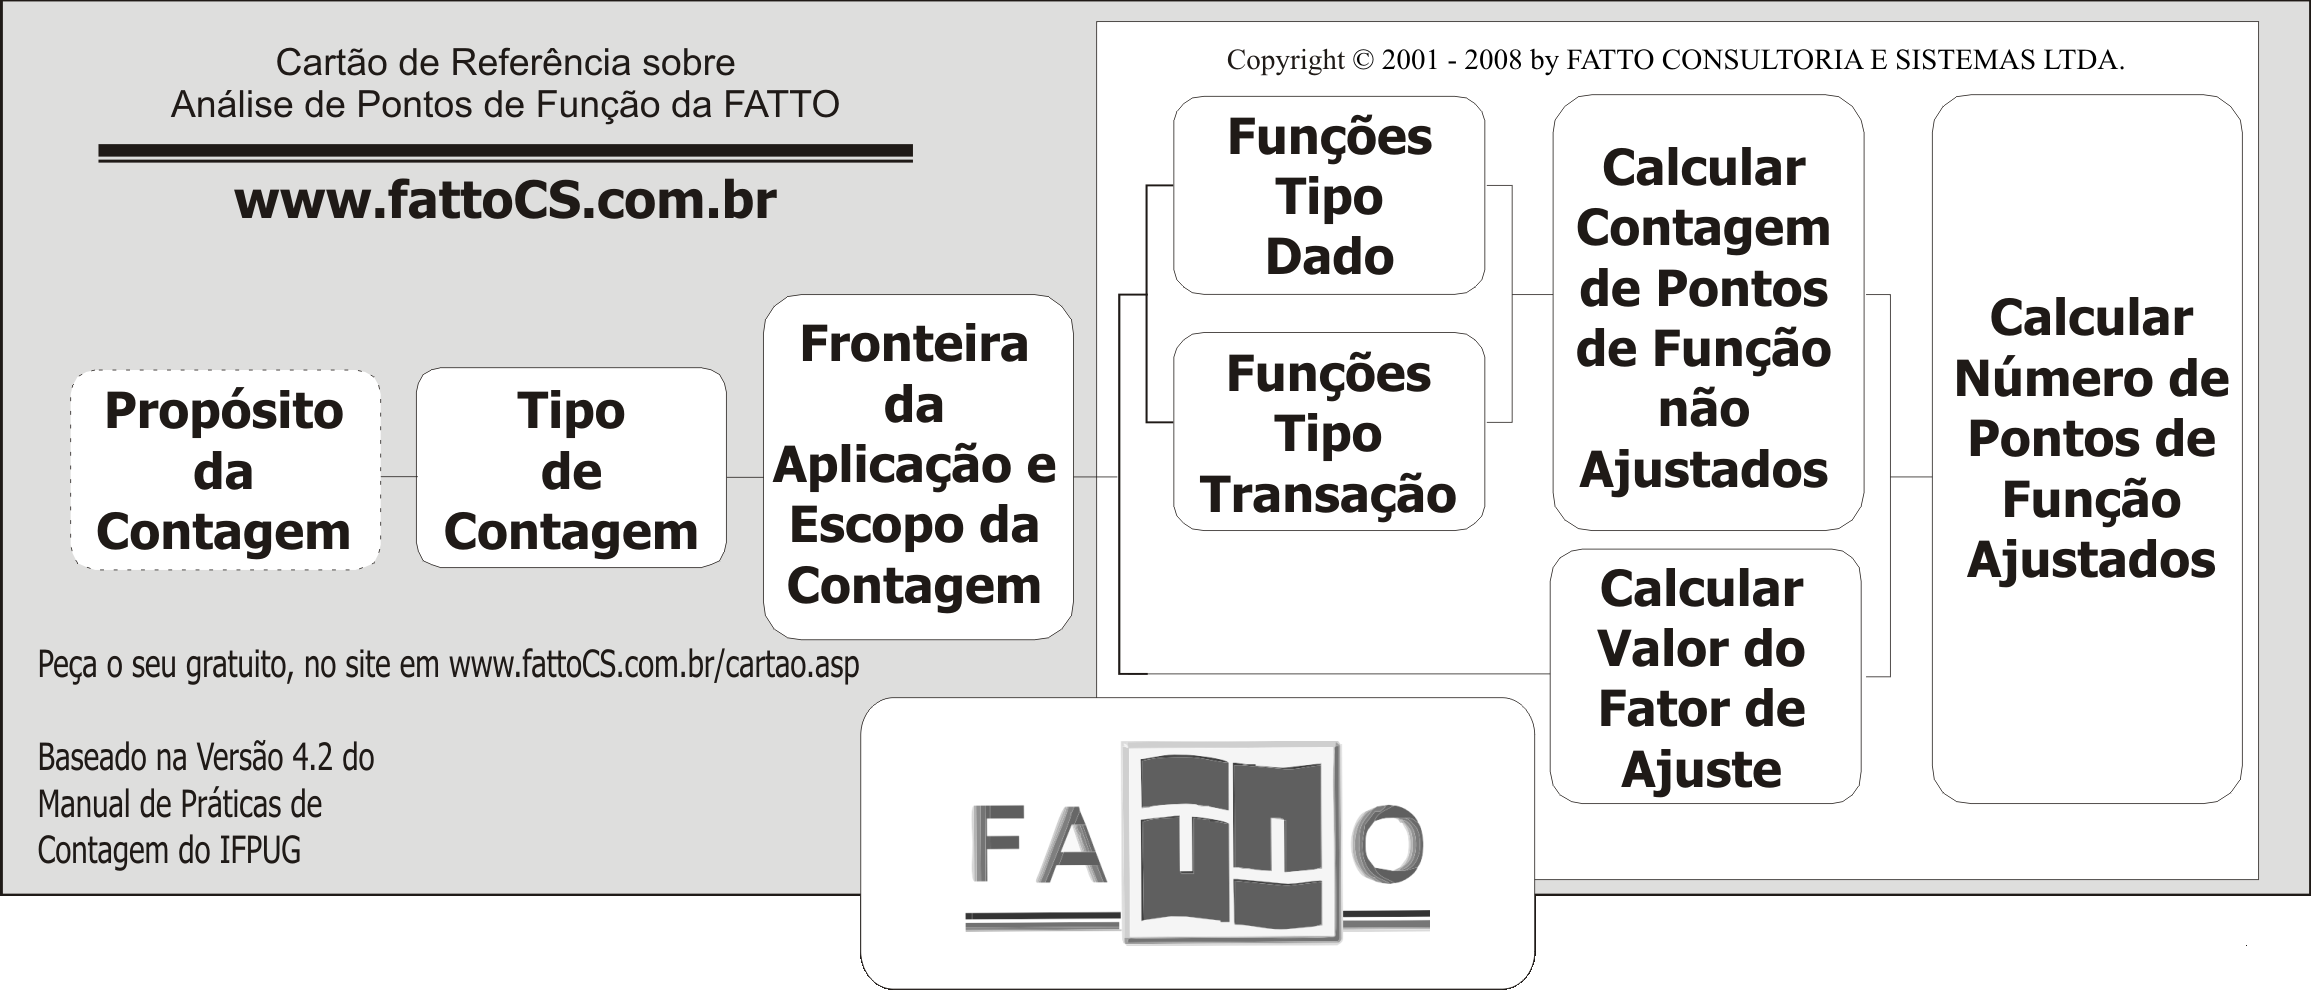 FATTO Consultoria e Sistemas - www.